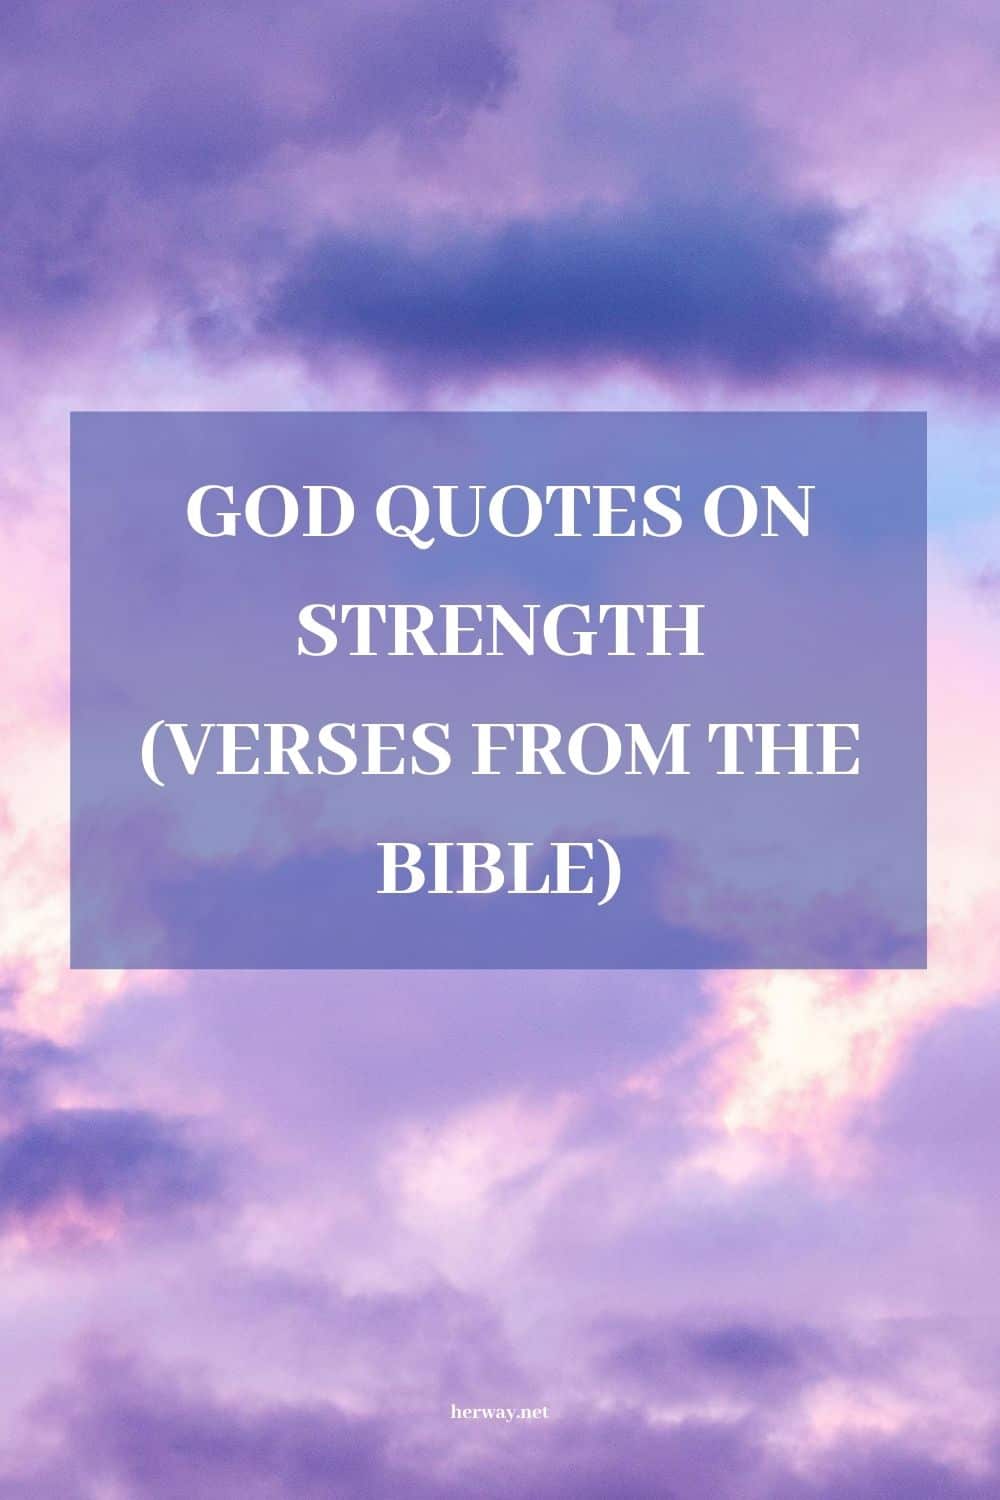 Citazioni su Dio Detti edificanti per ispirarti e darti forza